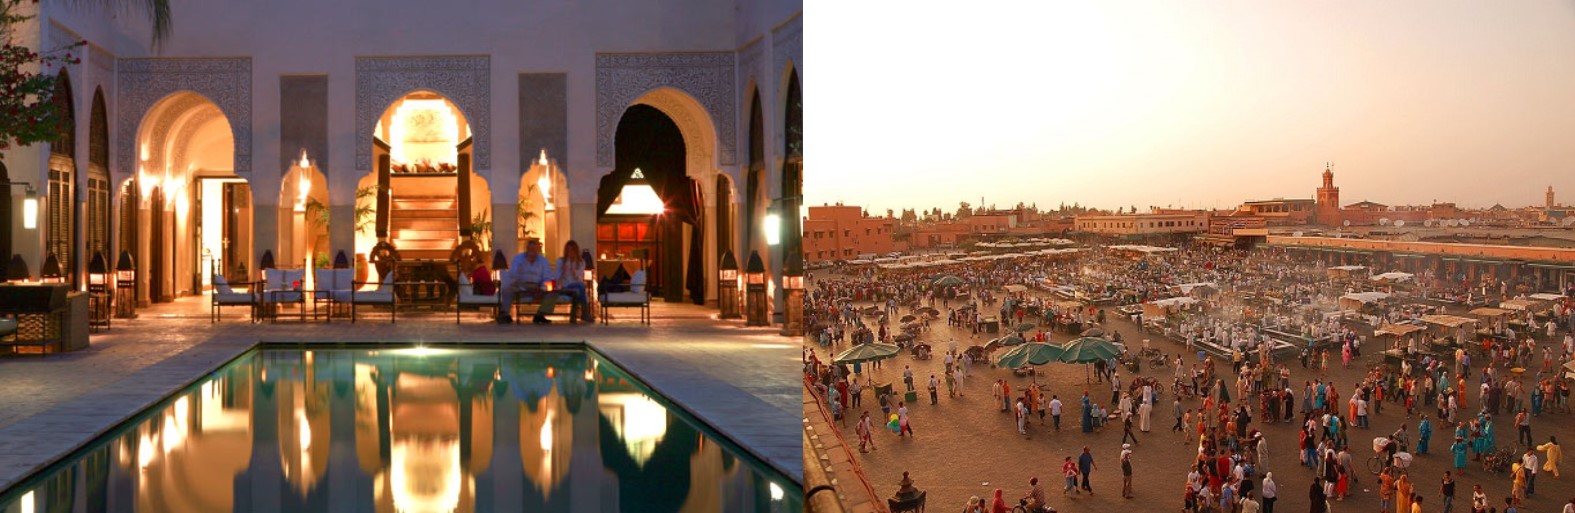 marrakech_noel_bon_plan